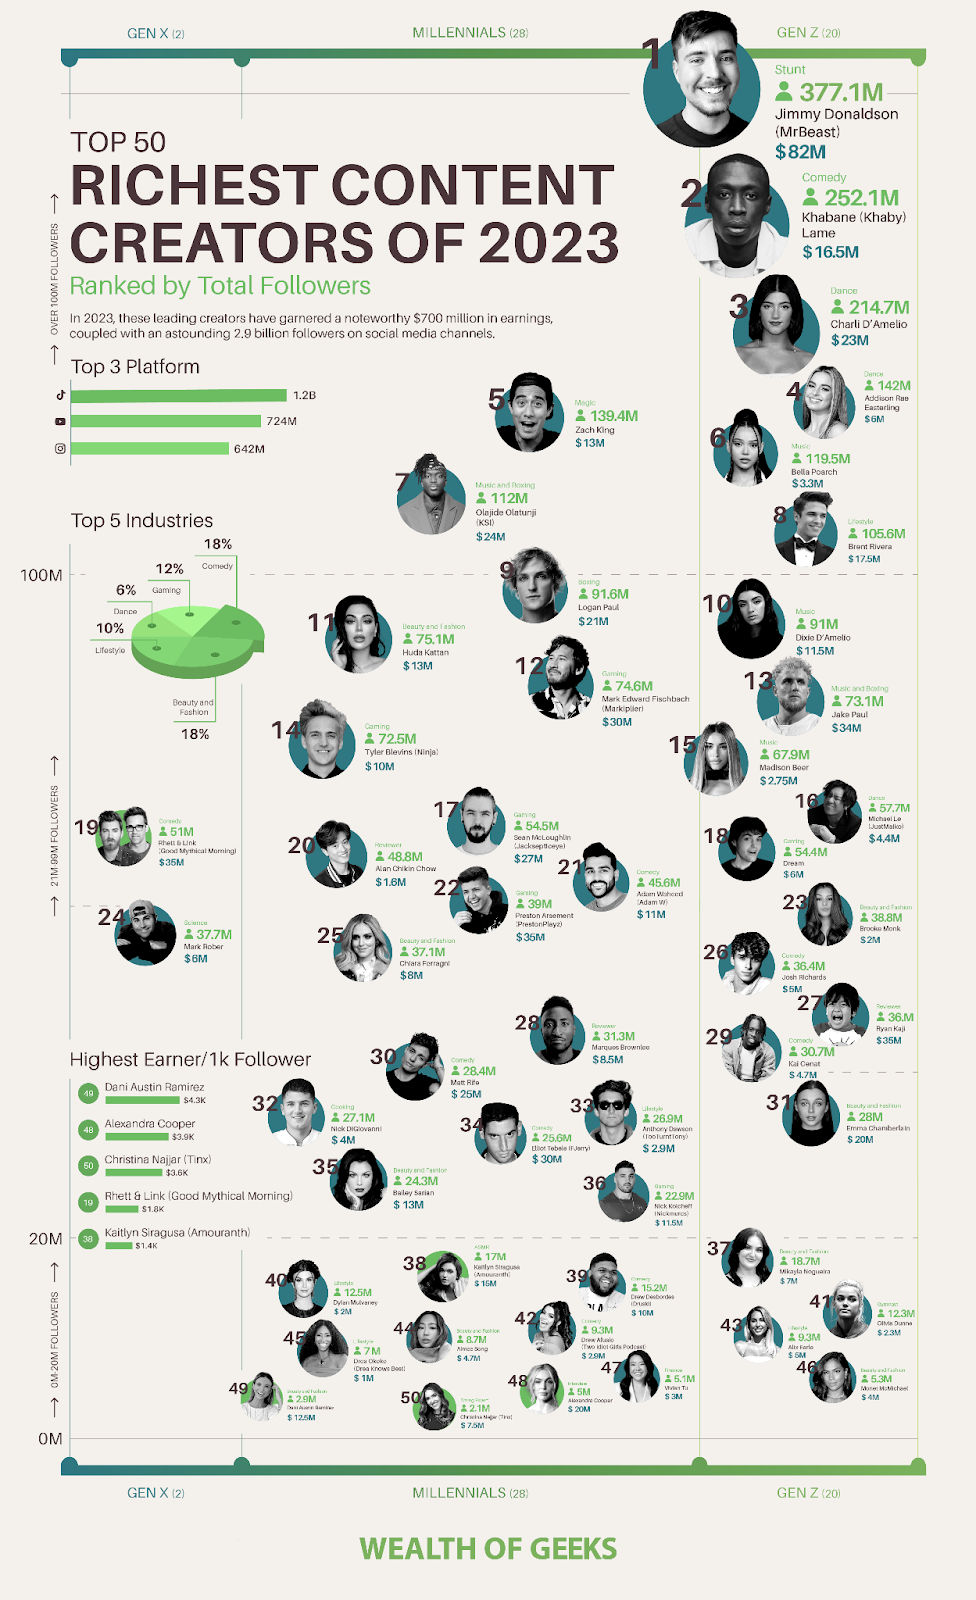 Top 10 Wealthiest Content Creators of  2023